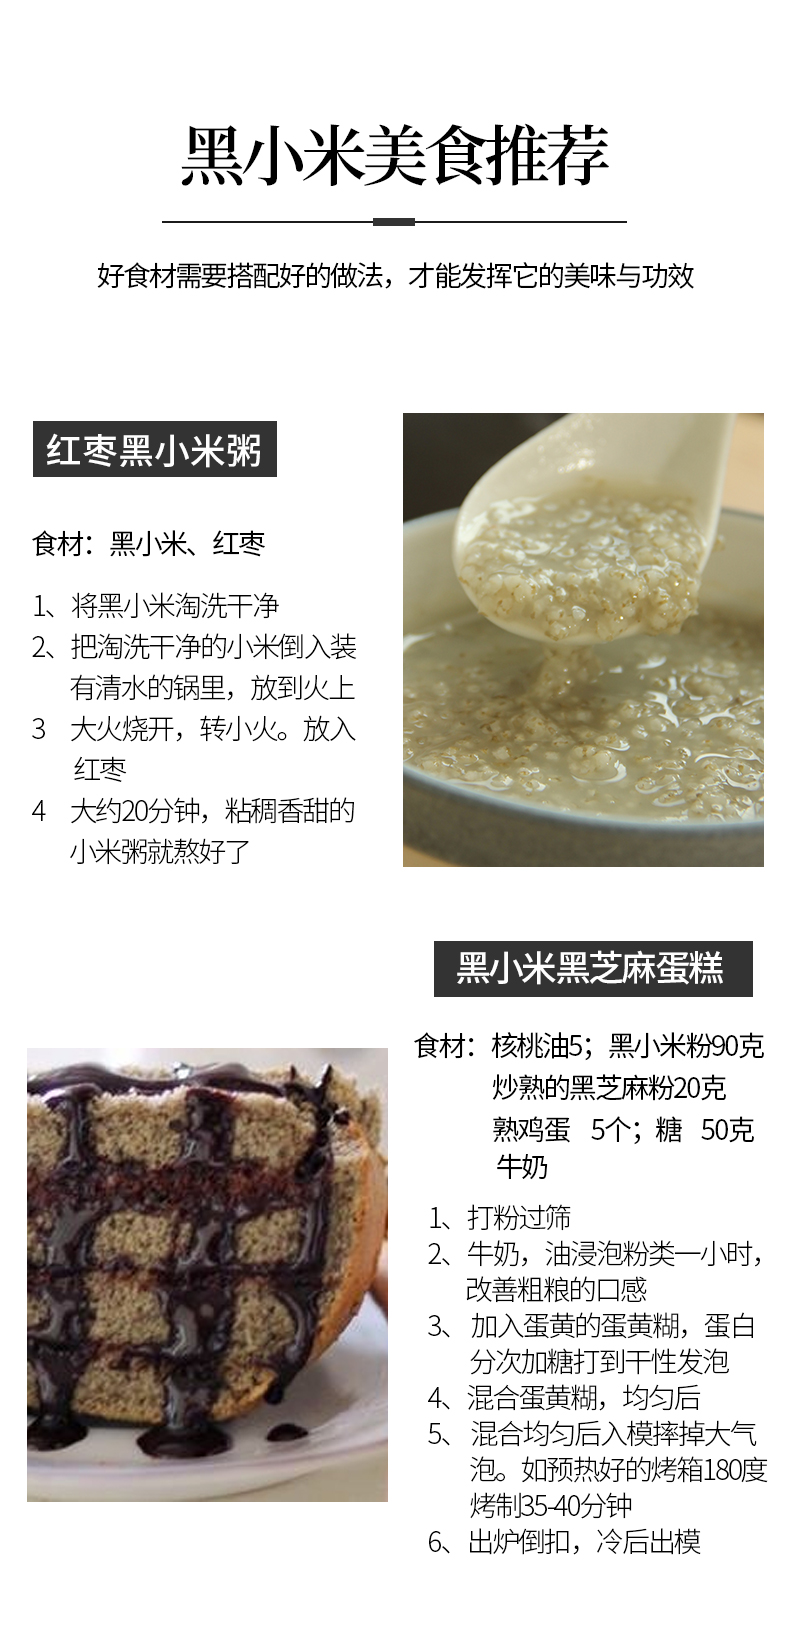 【5折优惠】米脂黑小米两袋装2020年新米陕北农家小米粥杂粮搭配500g*2